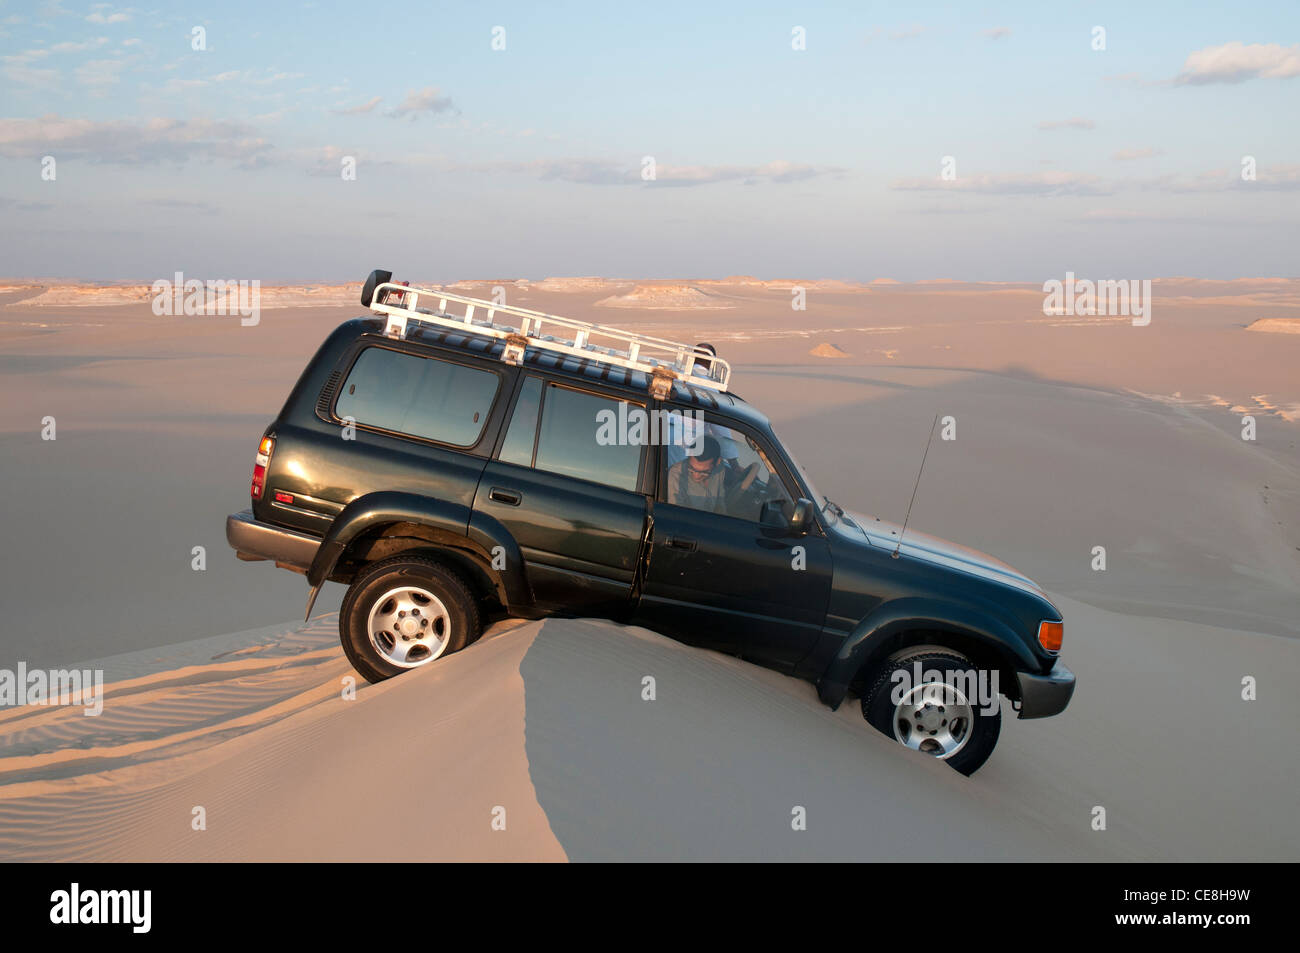 Offroad in das große Sandmeer, westliche Wüste, Ägypten Stockfoto